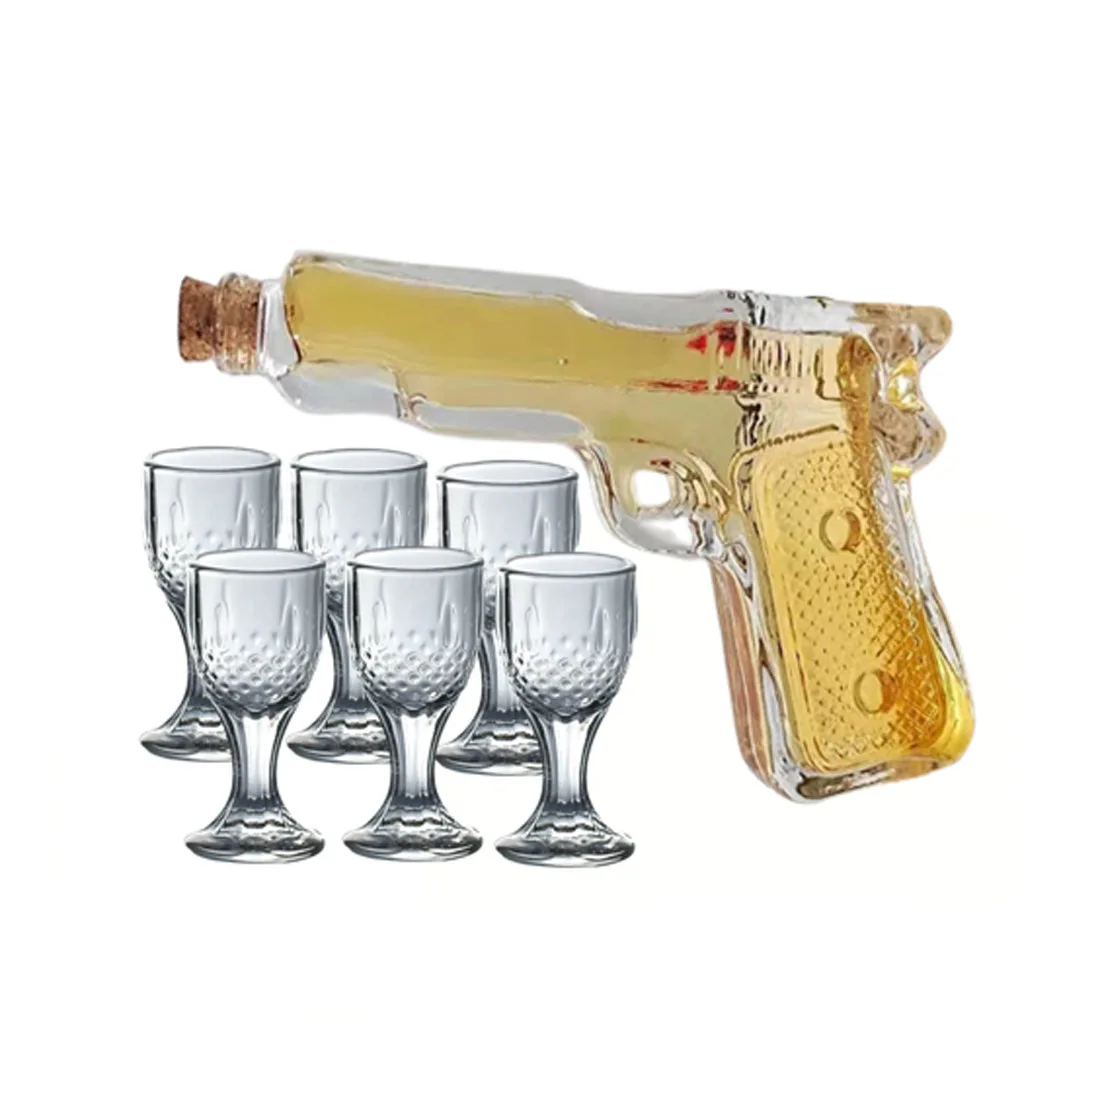 Lexus Cordial de Vidrio Vasos de chupito japonés mini Puerto glassic Whisky Vino Baijiu Barra de la parte Conjunto de 6 Taza 1 Pistola Sobrio taza de la botella